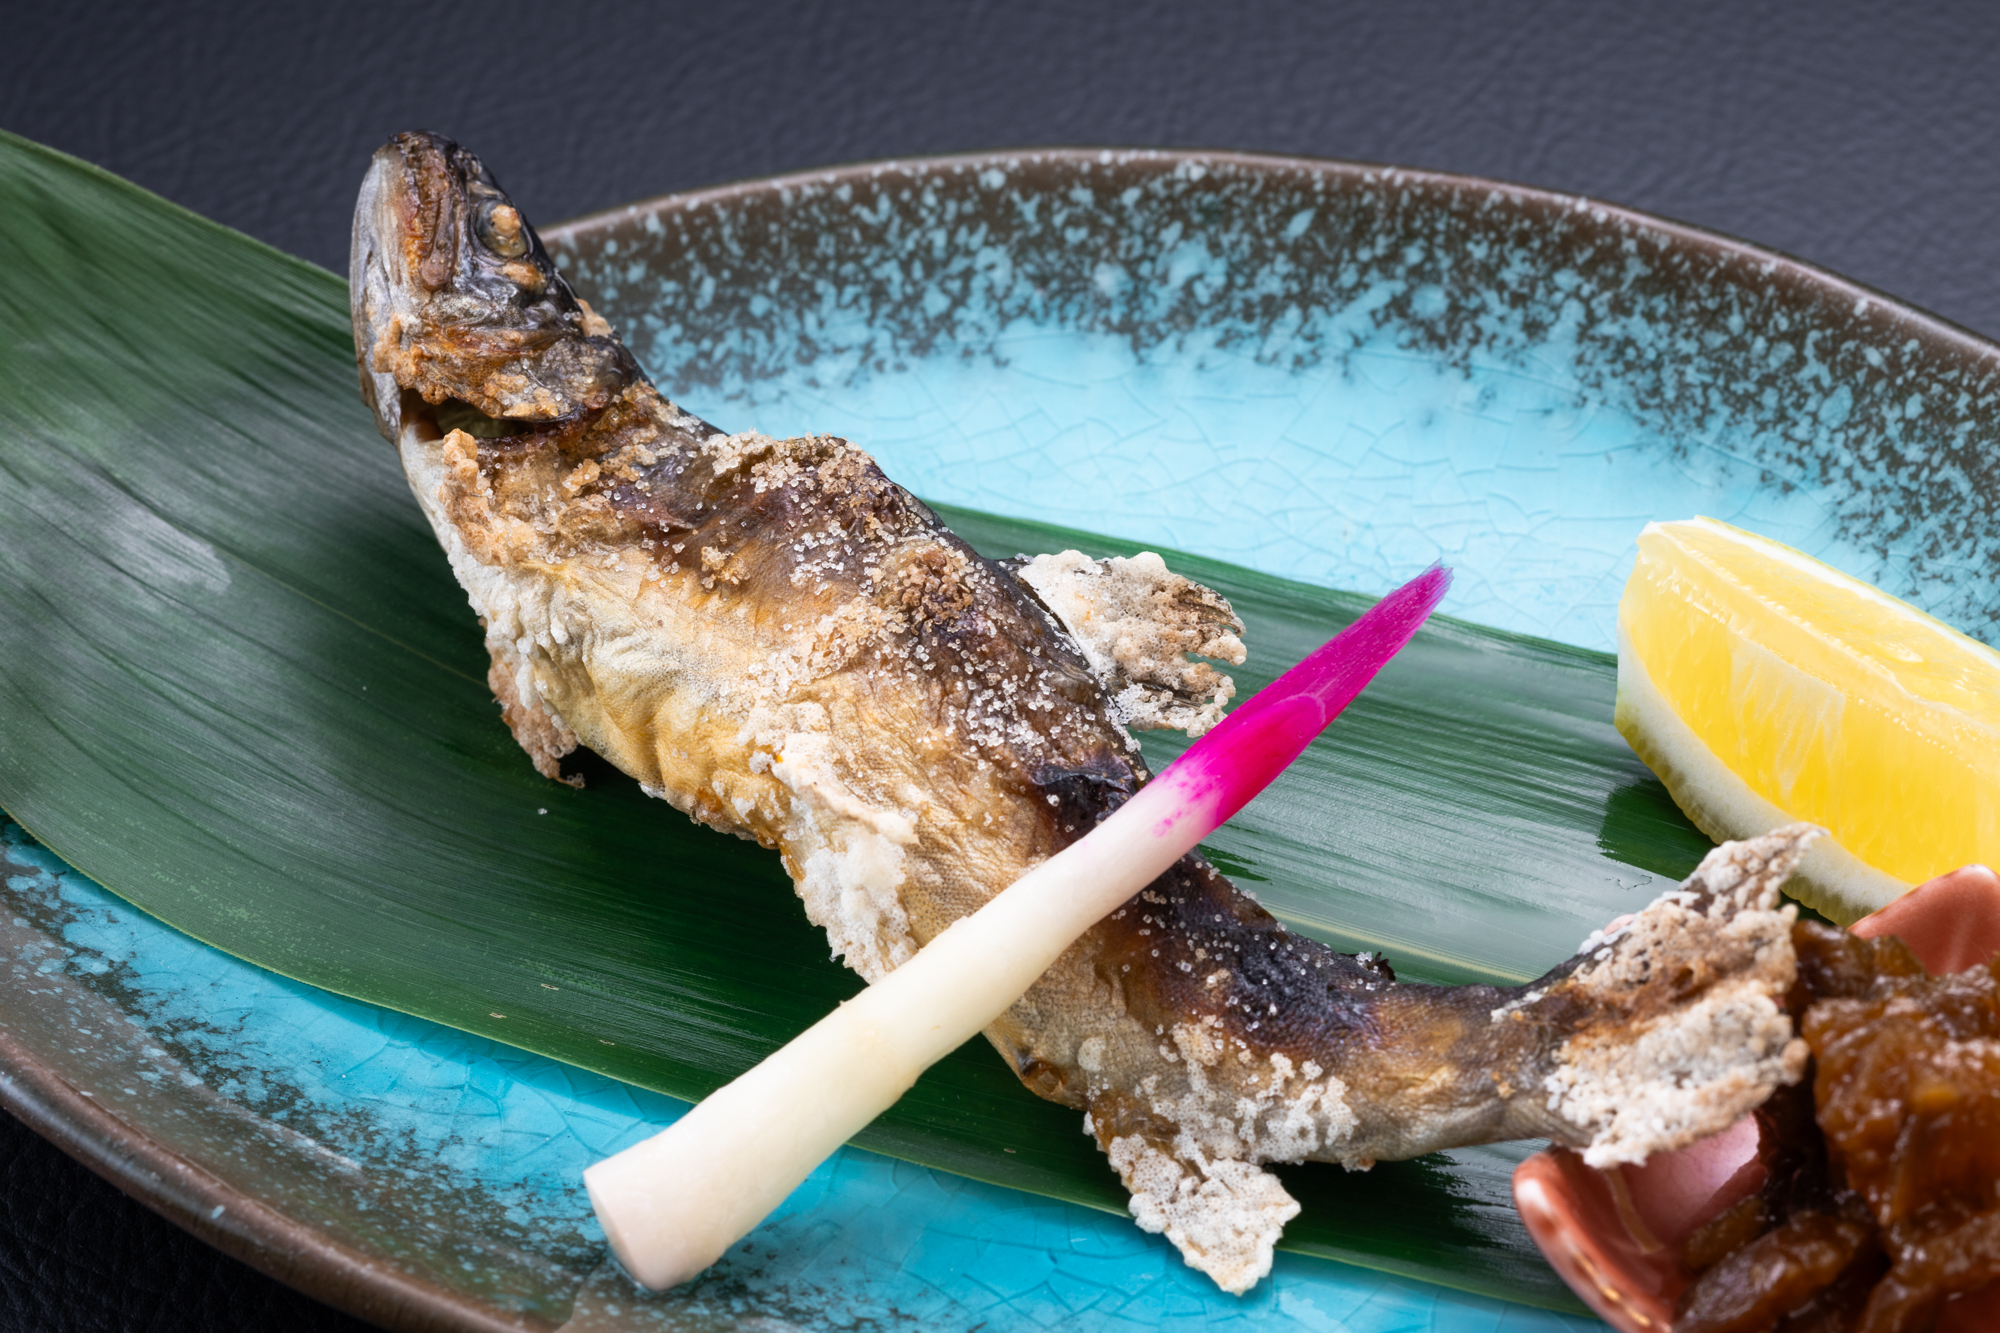 ■オプション料理【岩魚塩焼き】